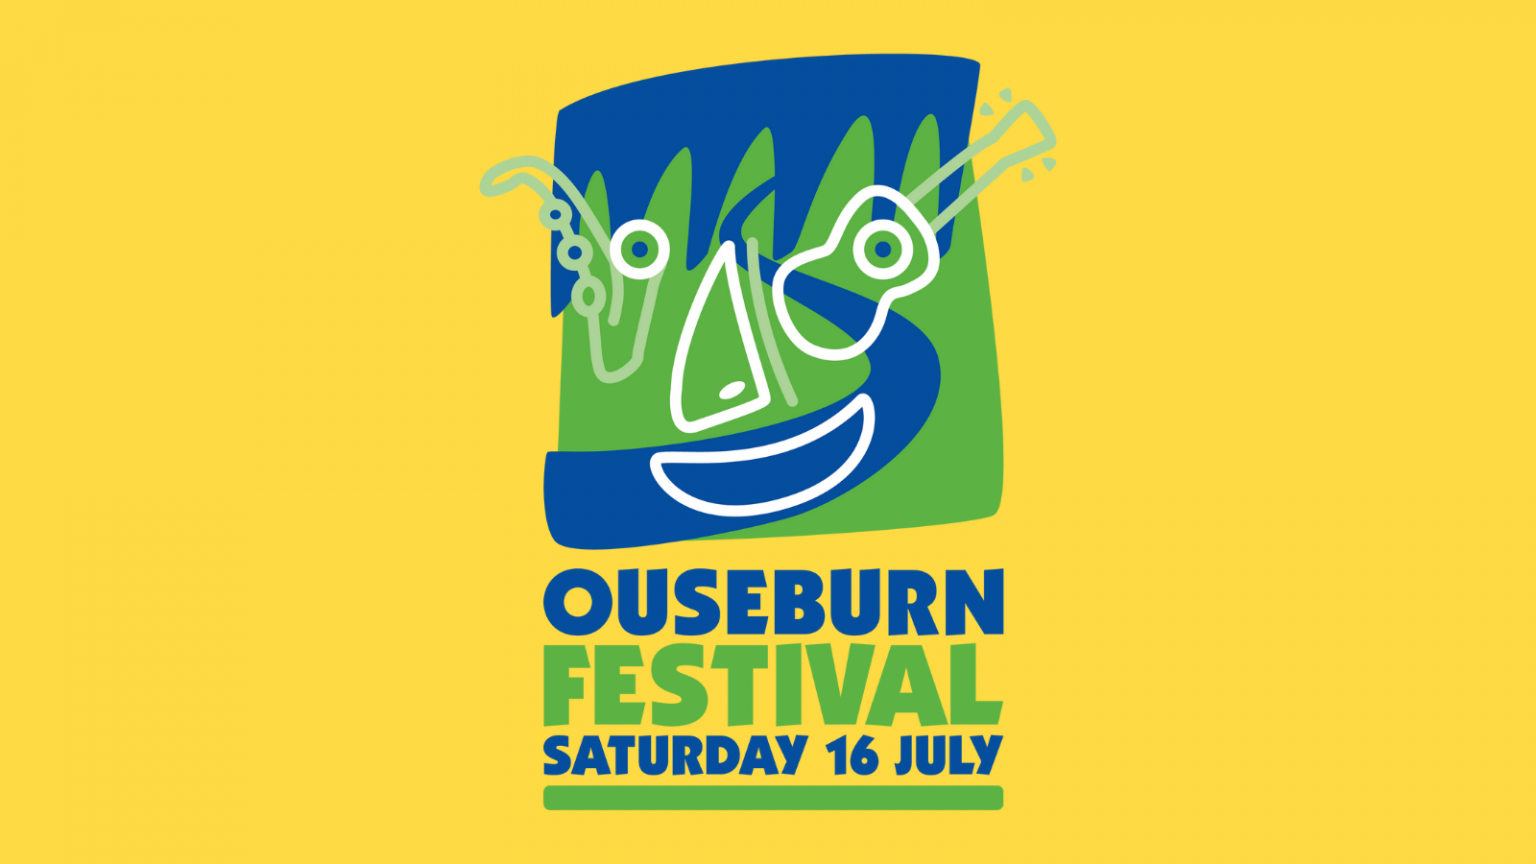 NEIFF at the Ouseburn Festival 2022